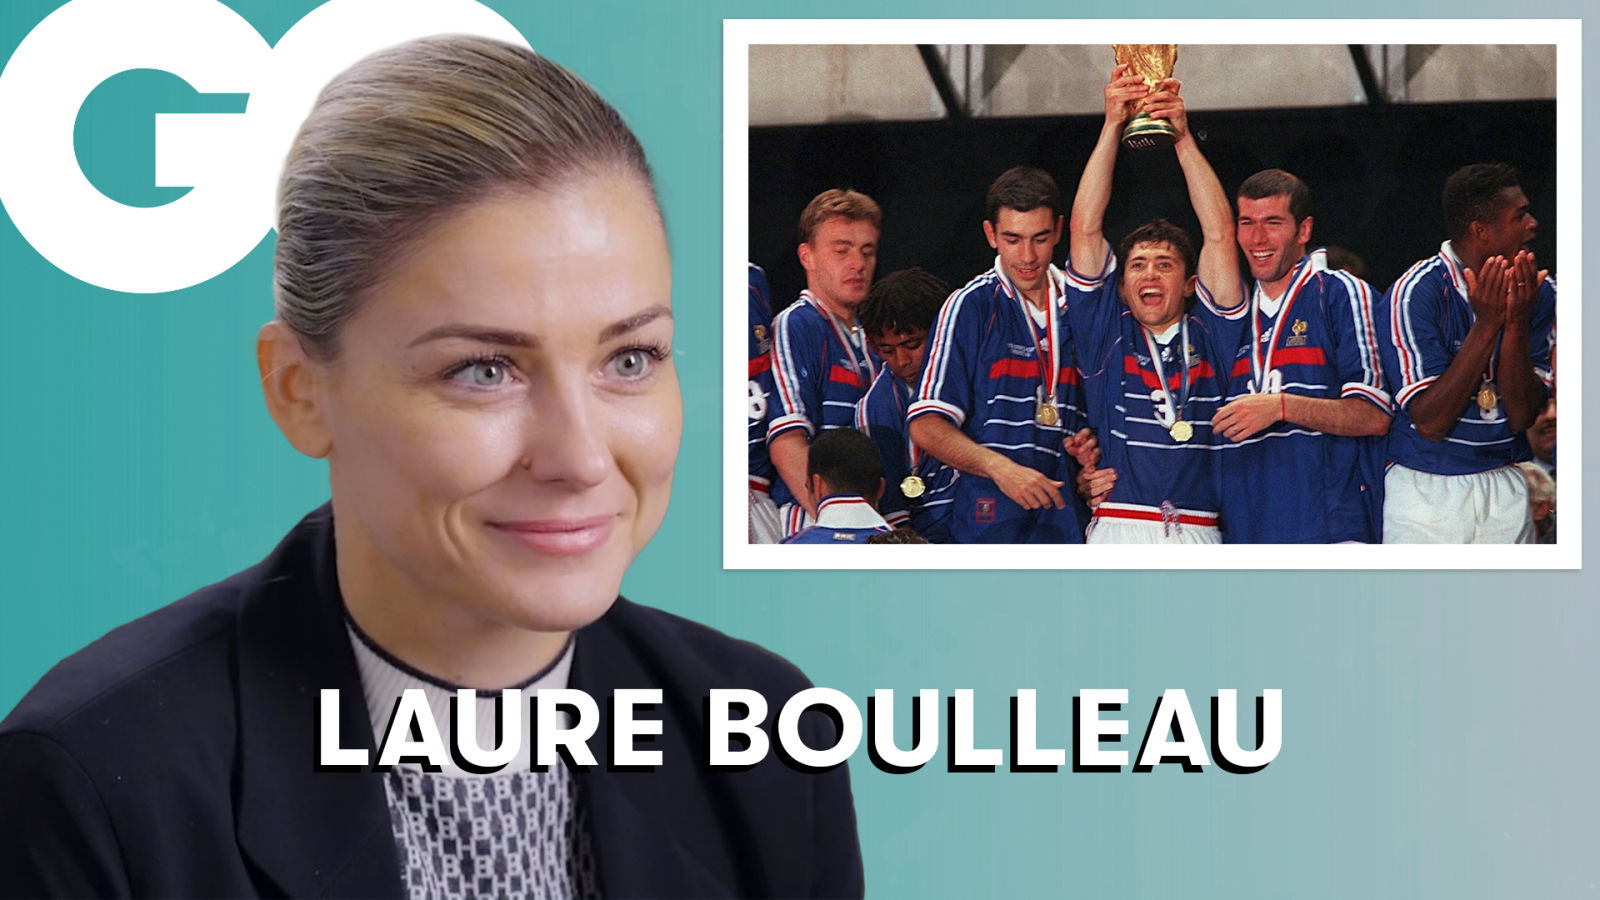 Laure Boulleau revient sur les carrières des légendes du football (Zidane, Thierry Henry...)